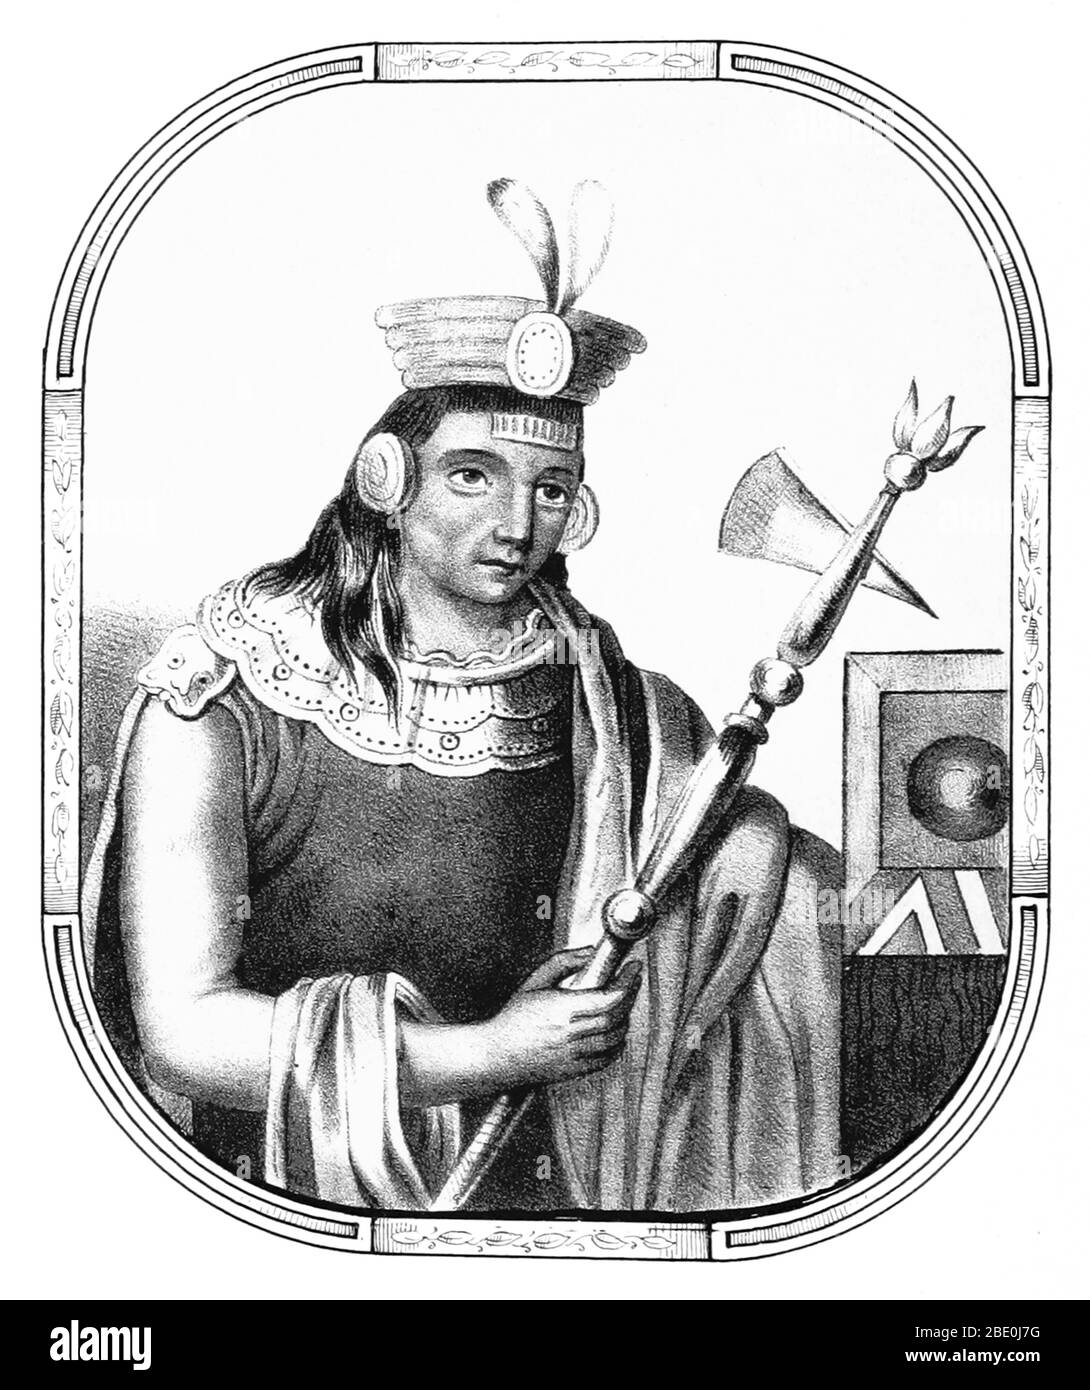 Manco Cápac war, nach Meinung einiger Historiker, der erste Gouverneur und Gründer der Inka-Zivilisation in Cusco, möglicherweise im frühen 13. Jahrhundert. Er ist auch eine Hauptfigur der Inka-Mythologie, er ist der Protagonist der beiden bekanntesten Legenden über die Herkunft der Inka, die beide ihn mit der Gründung von Cusco verbinden. Seine Hauptfrau war Mama Uqllu, auch Mutter seines Sohnes und Nachfolger Sinchi Ruq'a. Obwohl seine Figur in mehreren Chroniken erwähnt wird, bleibt seine tatsächliche Existenz unklar. Bild von Seite 42 von 'Recuerdos de la Monarquia Peruana, ó boquejo de la historia d Stockfoto